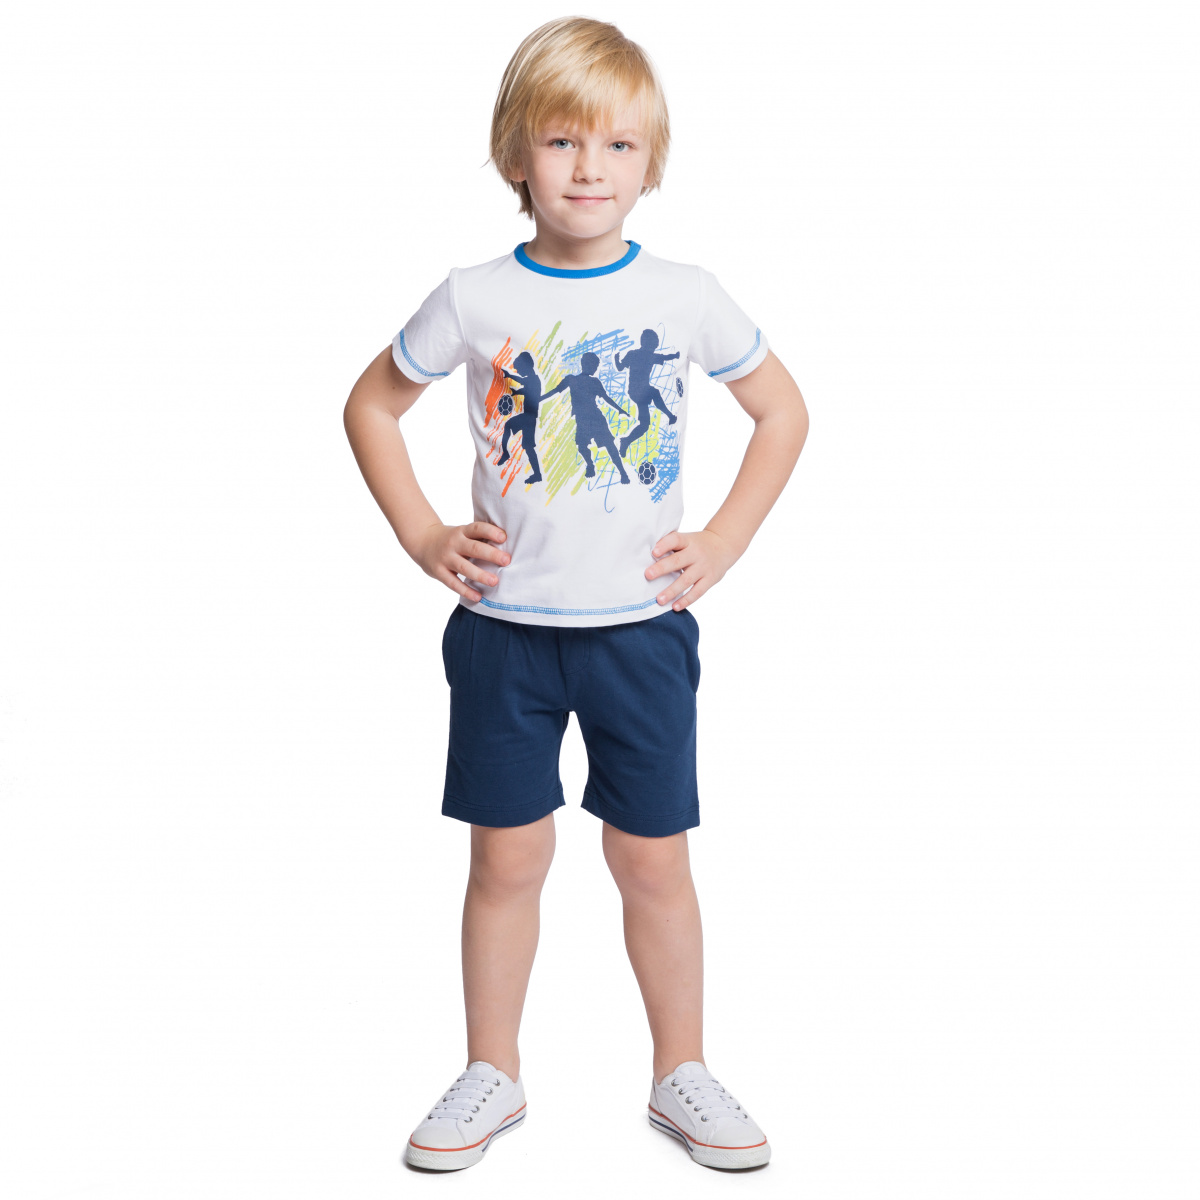 Комплект шорт для мальчика. Спортивные шорты для мальчика. Мальчик в майке и шортах. Детские футболки шортики. Одежда для мальчиков шорты.